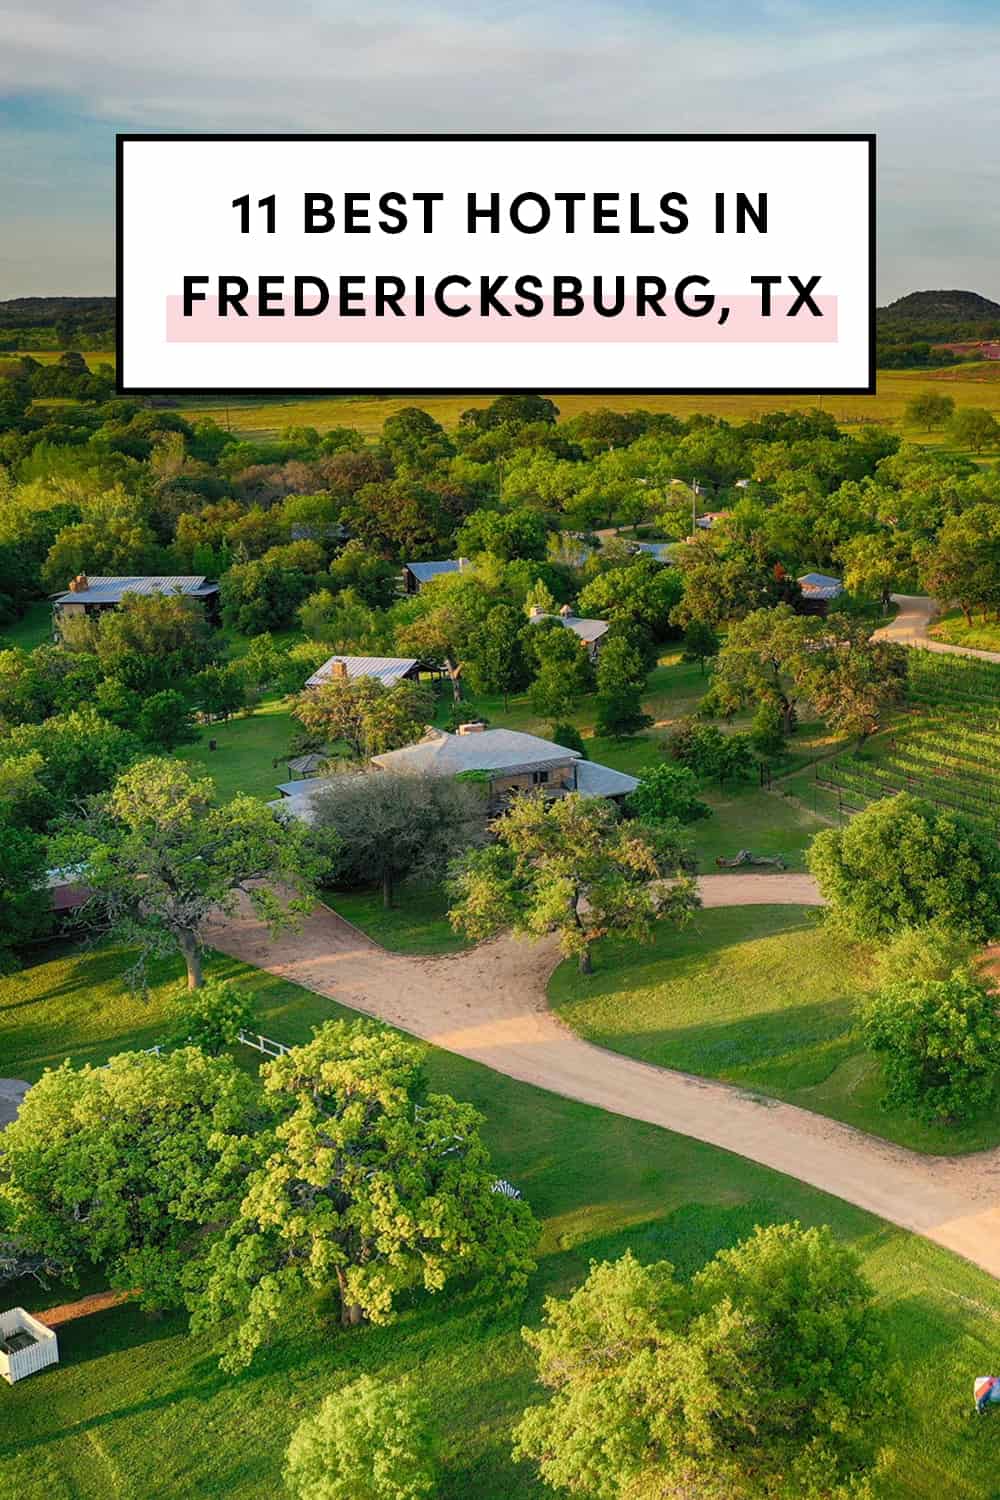 Best hotels in Fredericksburg Texas